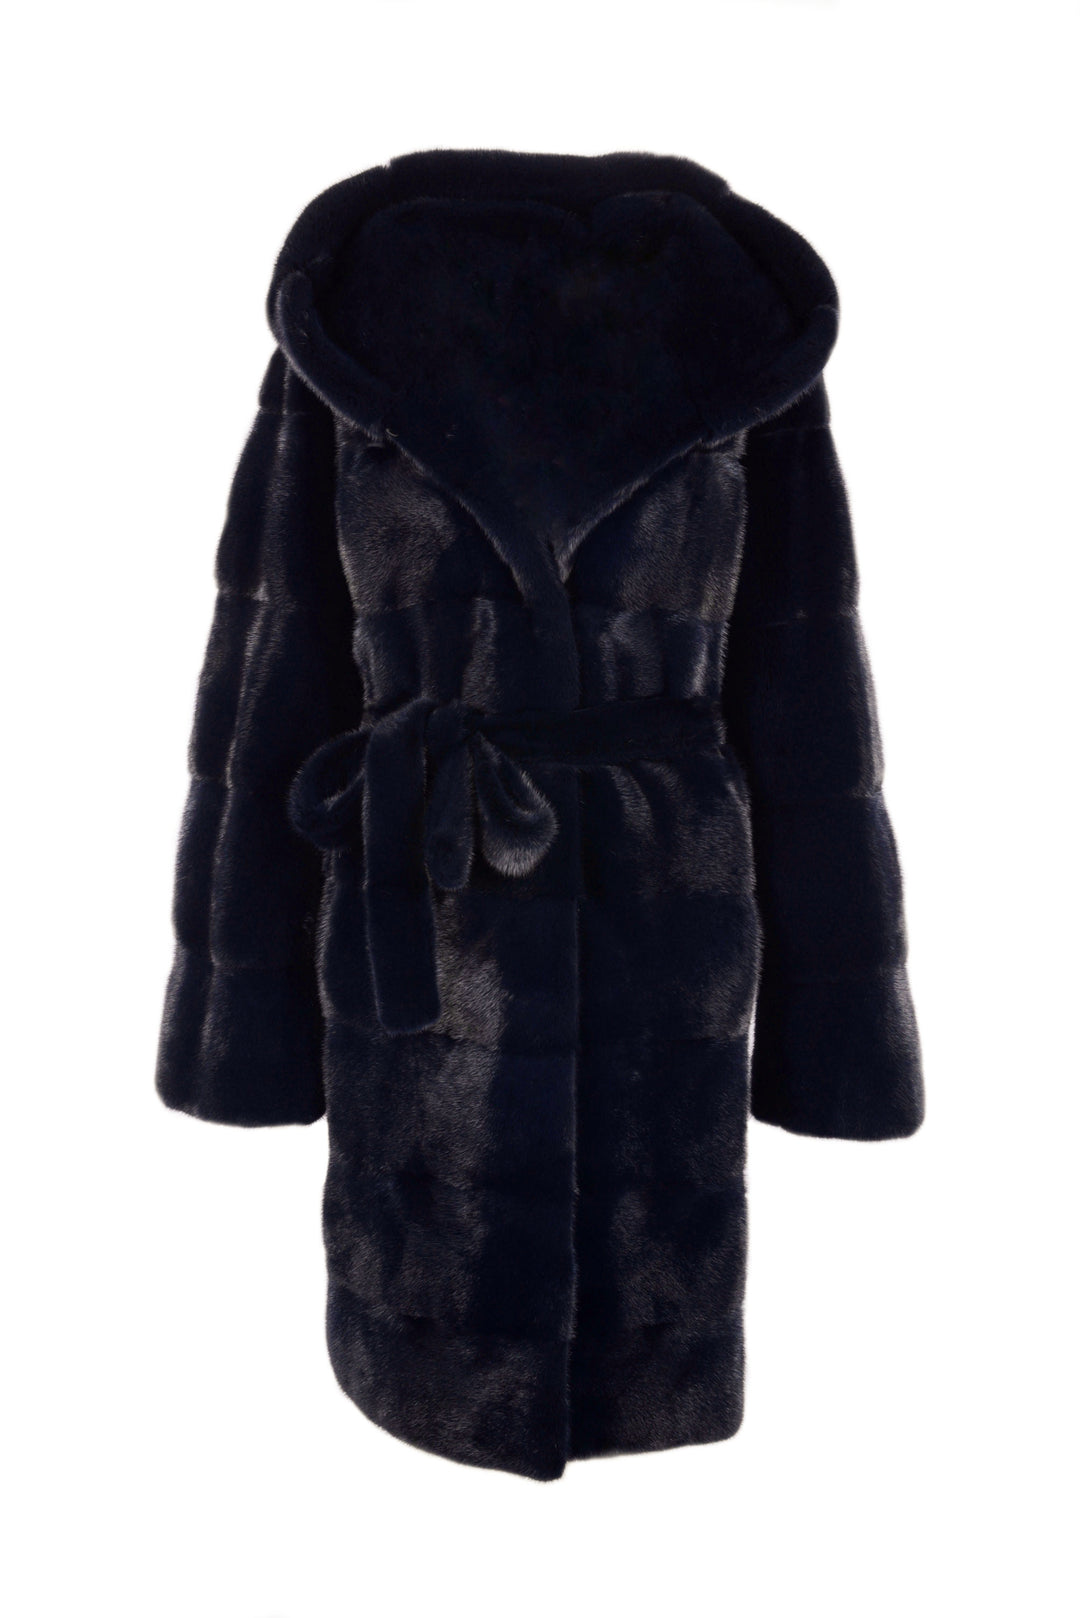 Hooded mink fur coat with belt